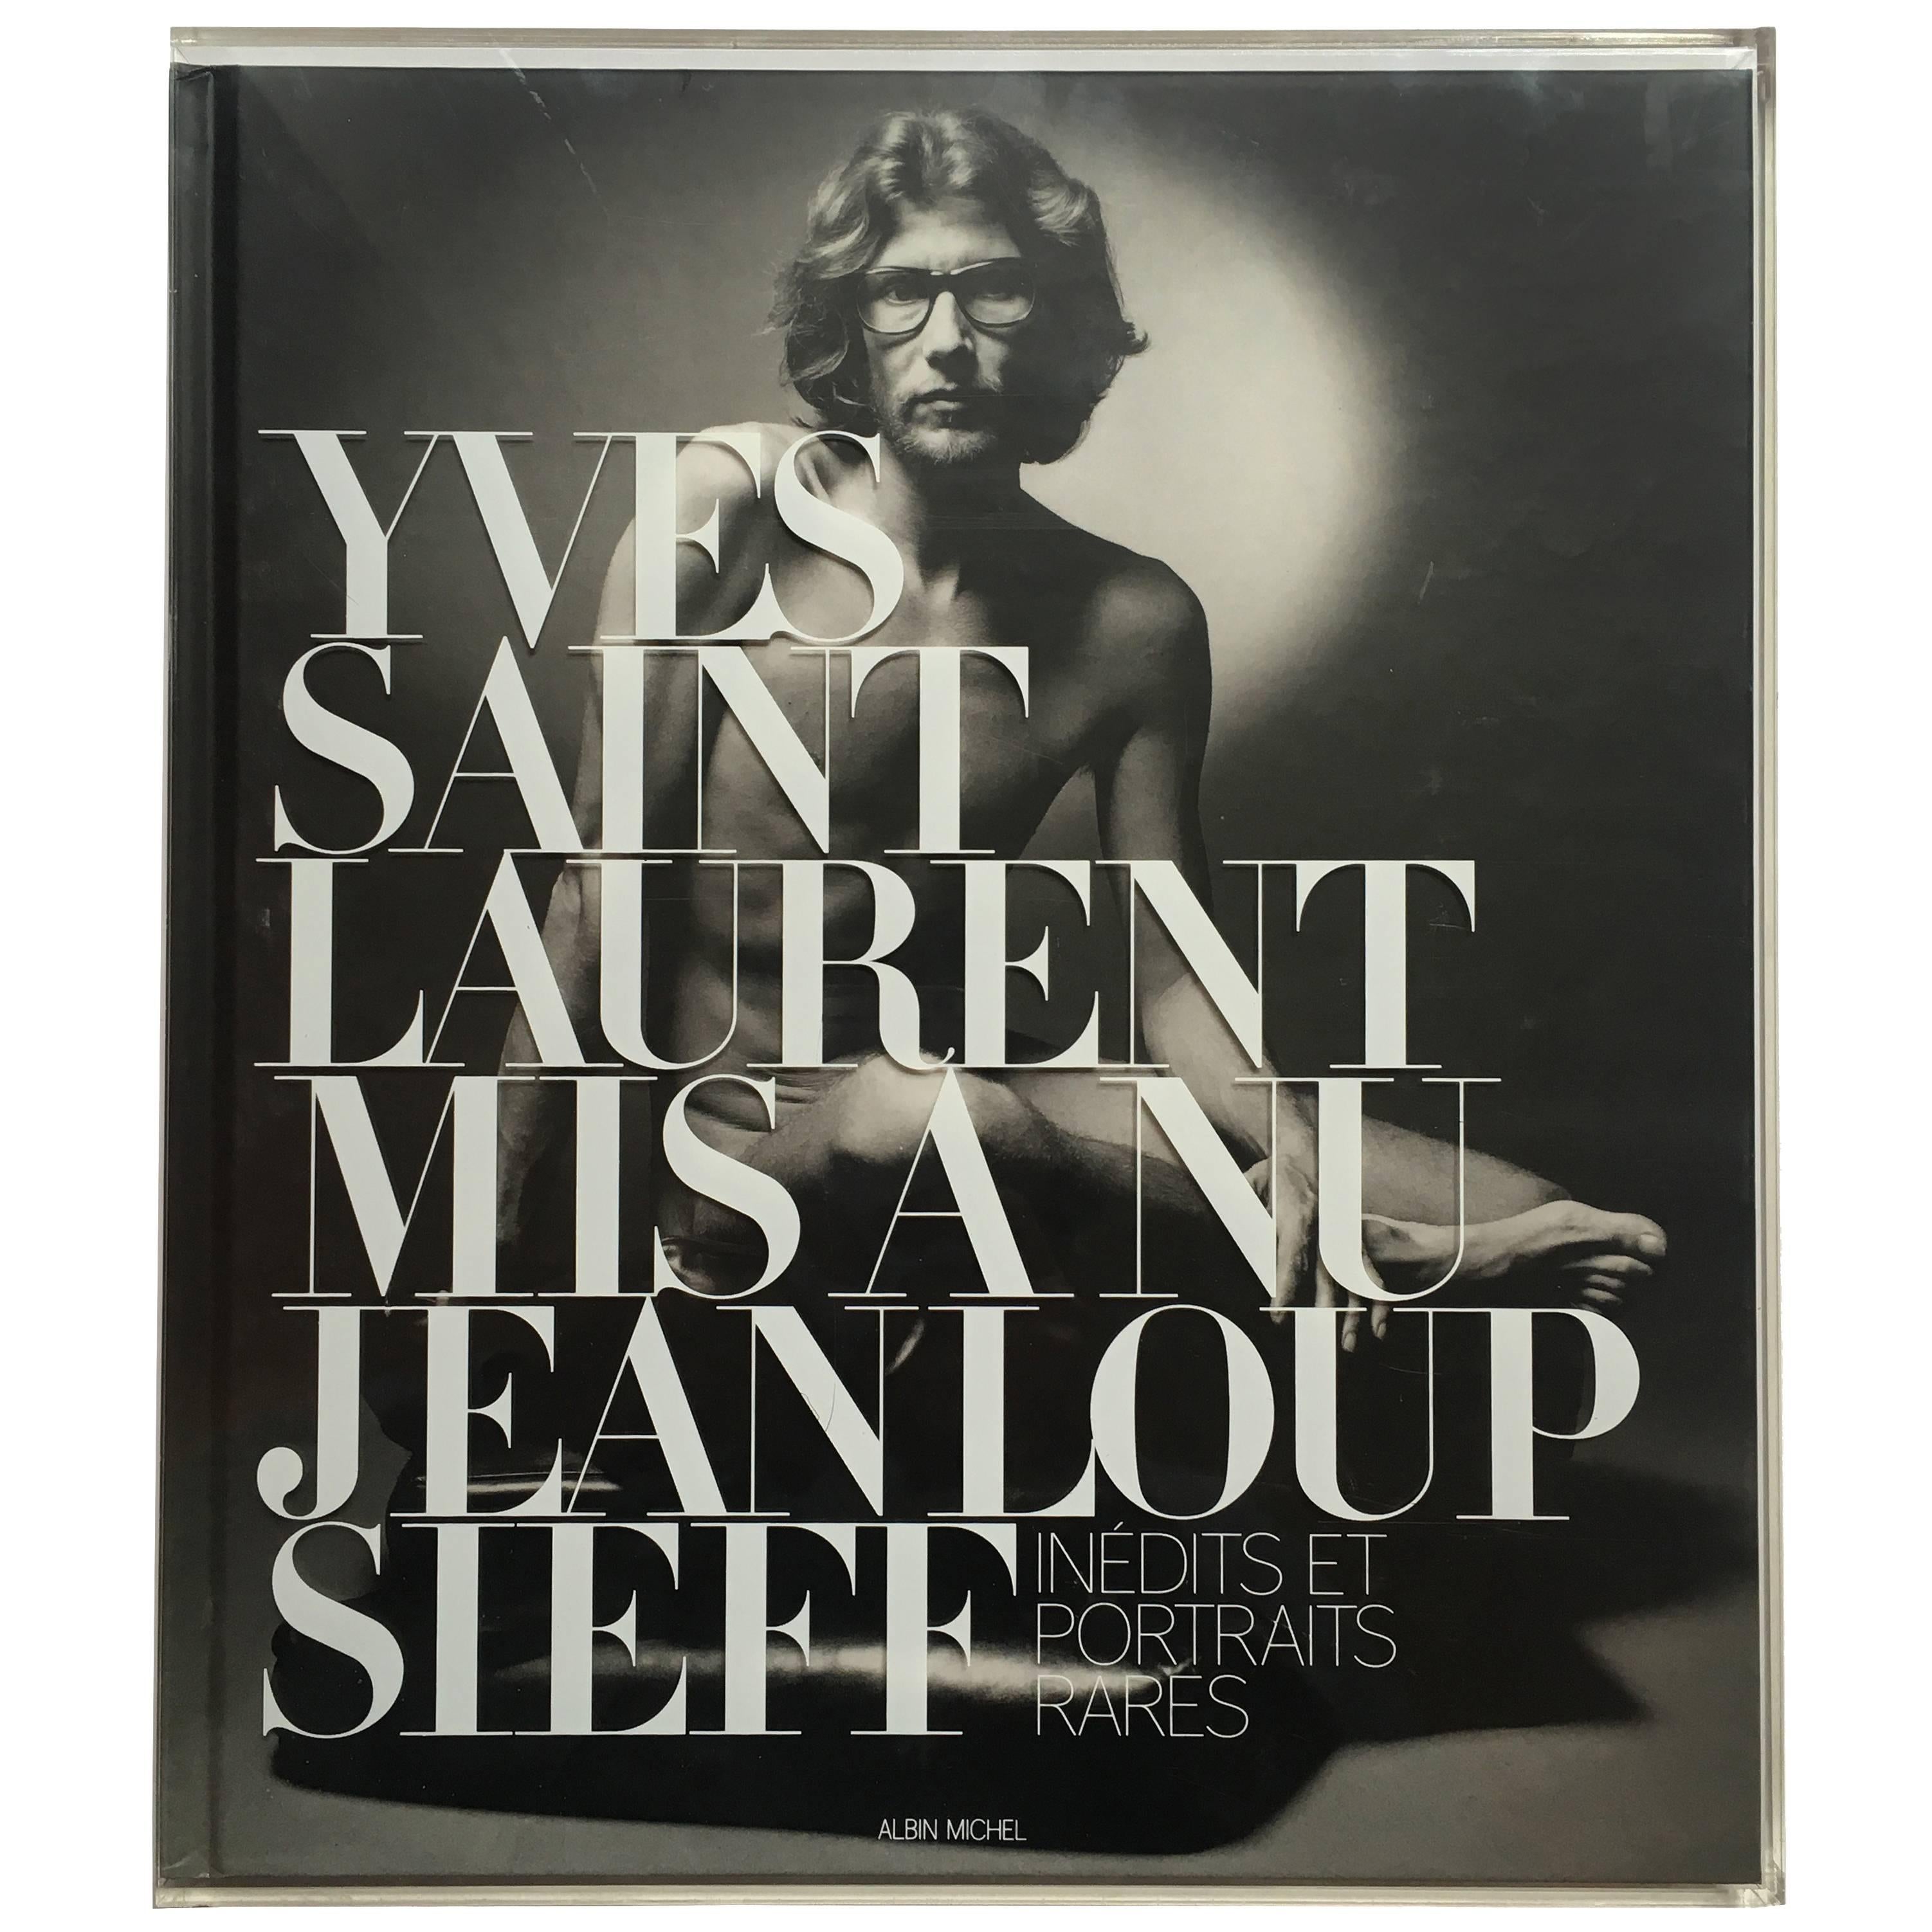 "Yves Saint Laurent Mis à nu: Inédits et Portraits Rares–Jeanloup Sieff" 2010